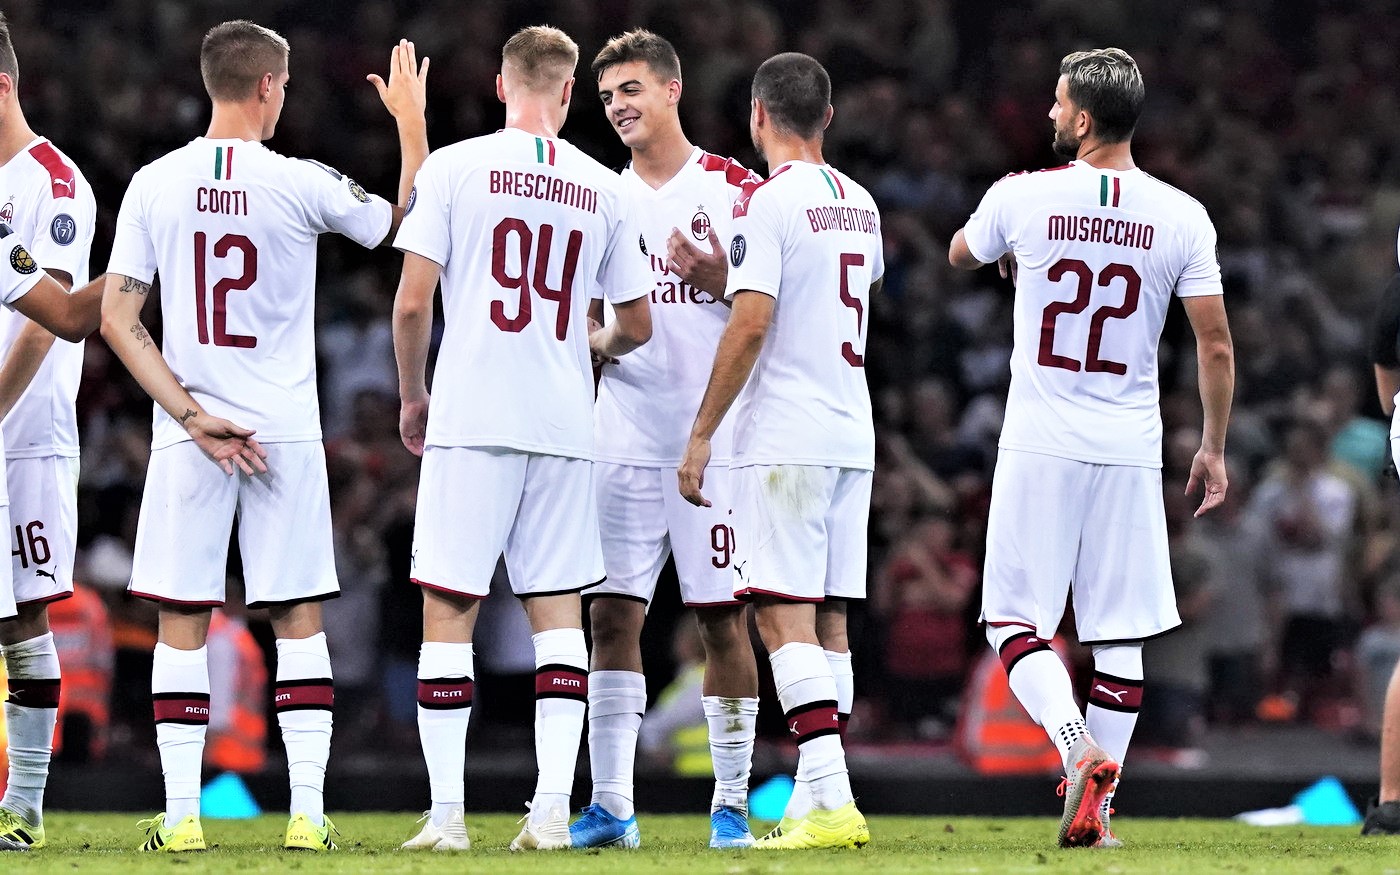 Milan piace ma United vince ai rigori, Suso si conferma